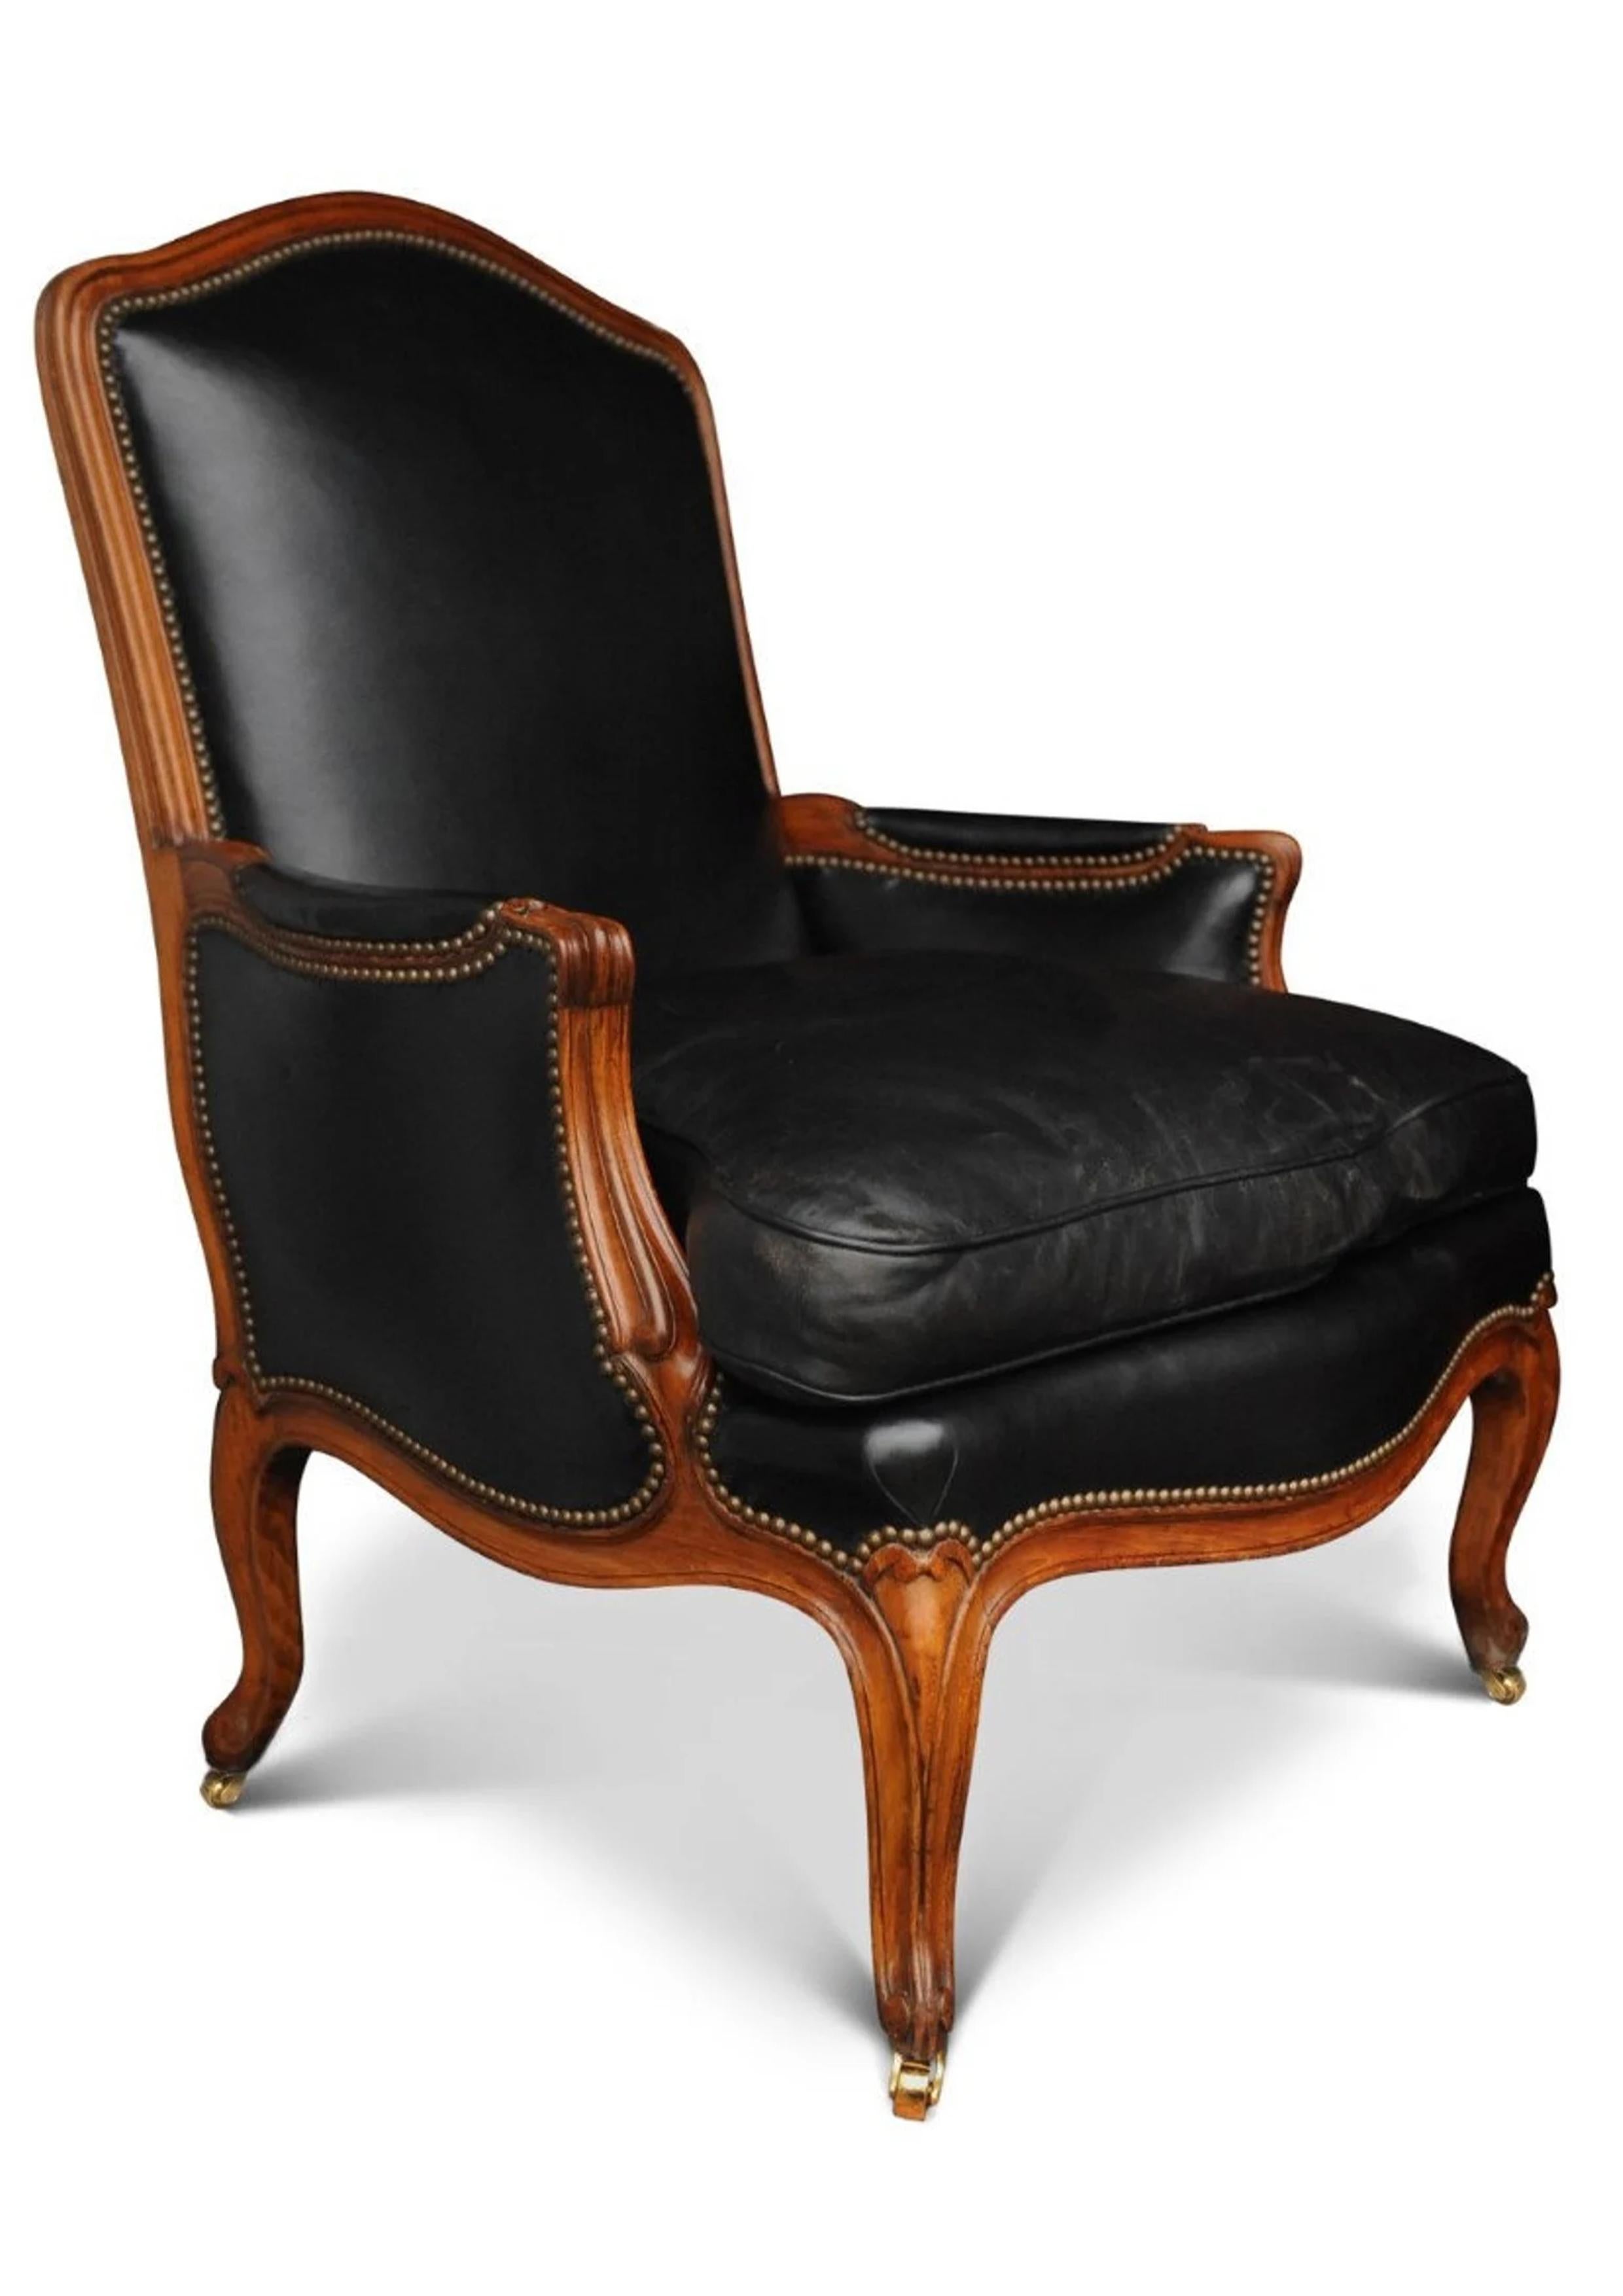 Ein schwarzes Leder Louis XV Französisch Bergere Sessel mit Messing Stud Details beendet

Höhe bis Sitz 47cm
